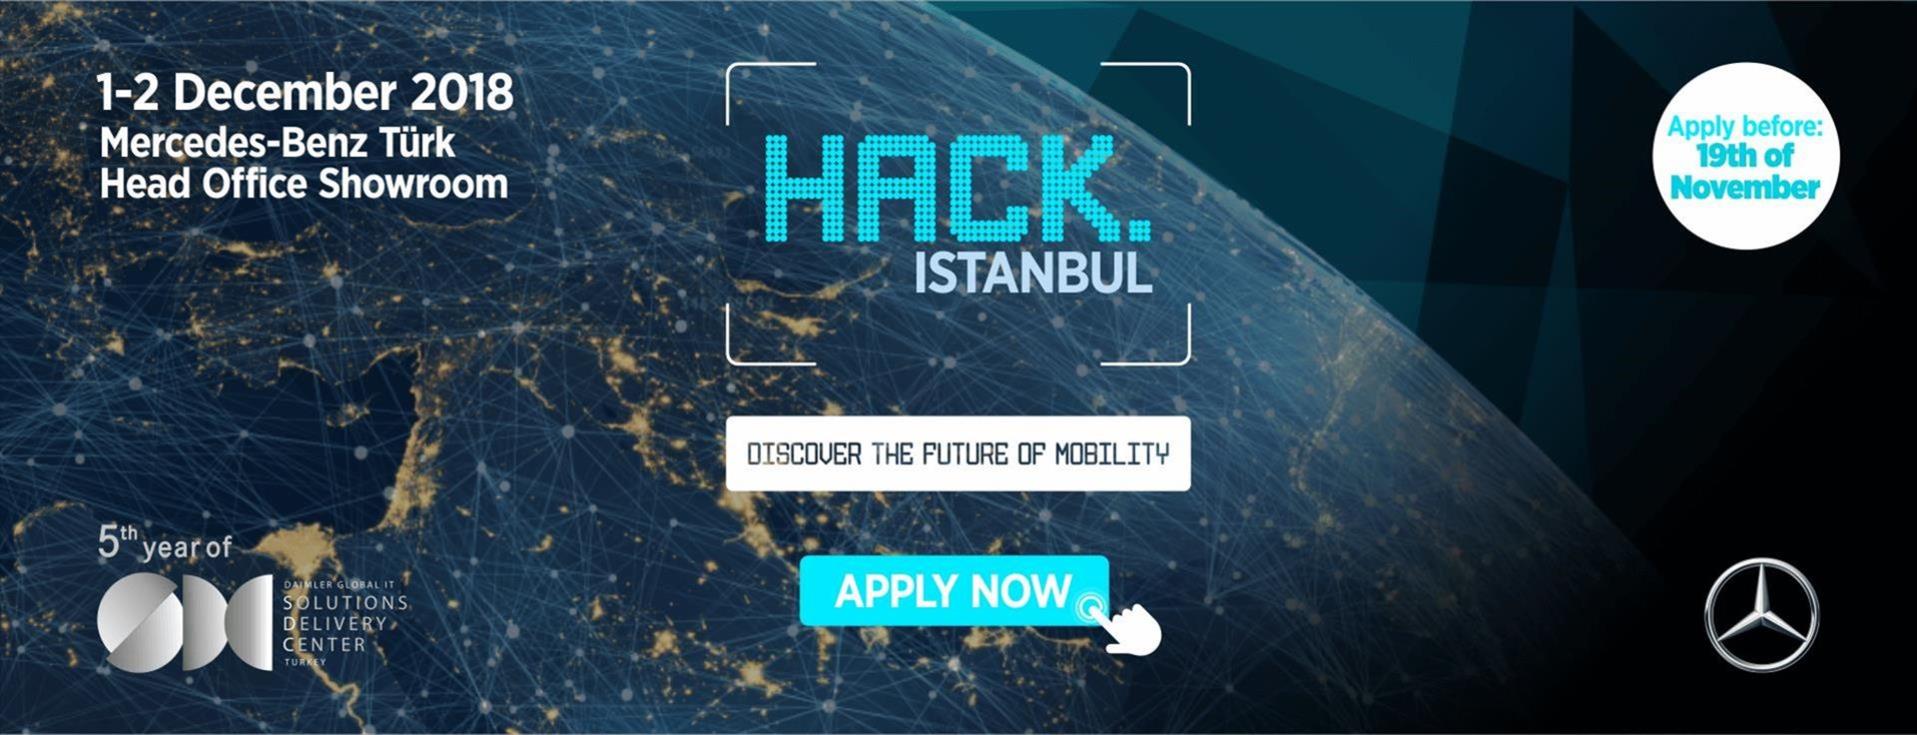 Mercedes-Benz Türk'ün Hackathon Etkinliğinde Kazananlar Belli Oldu